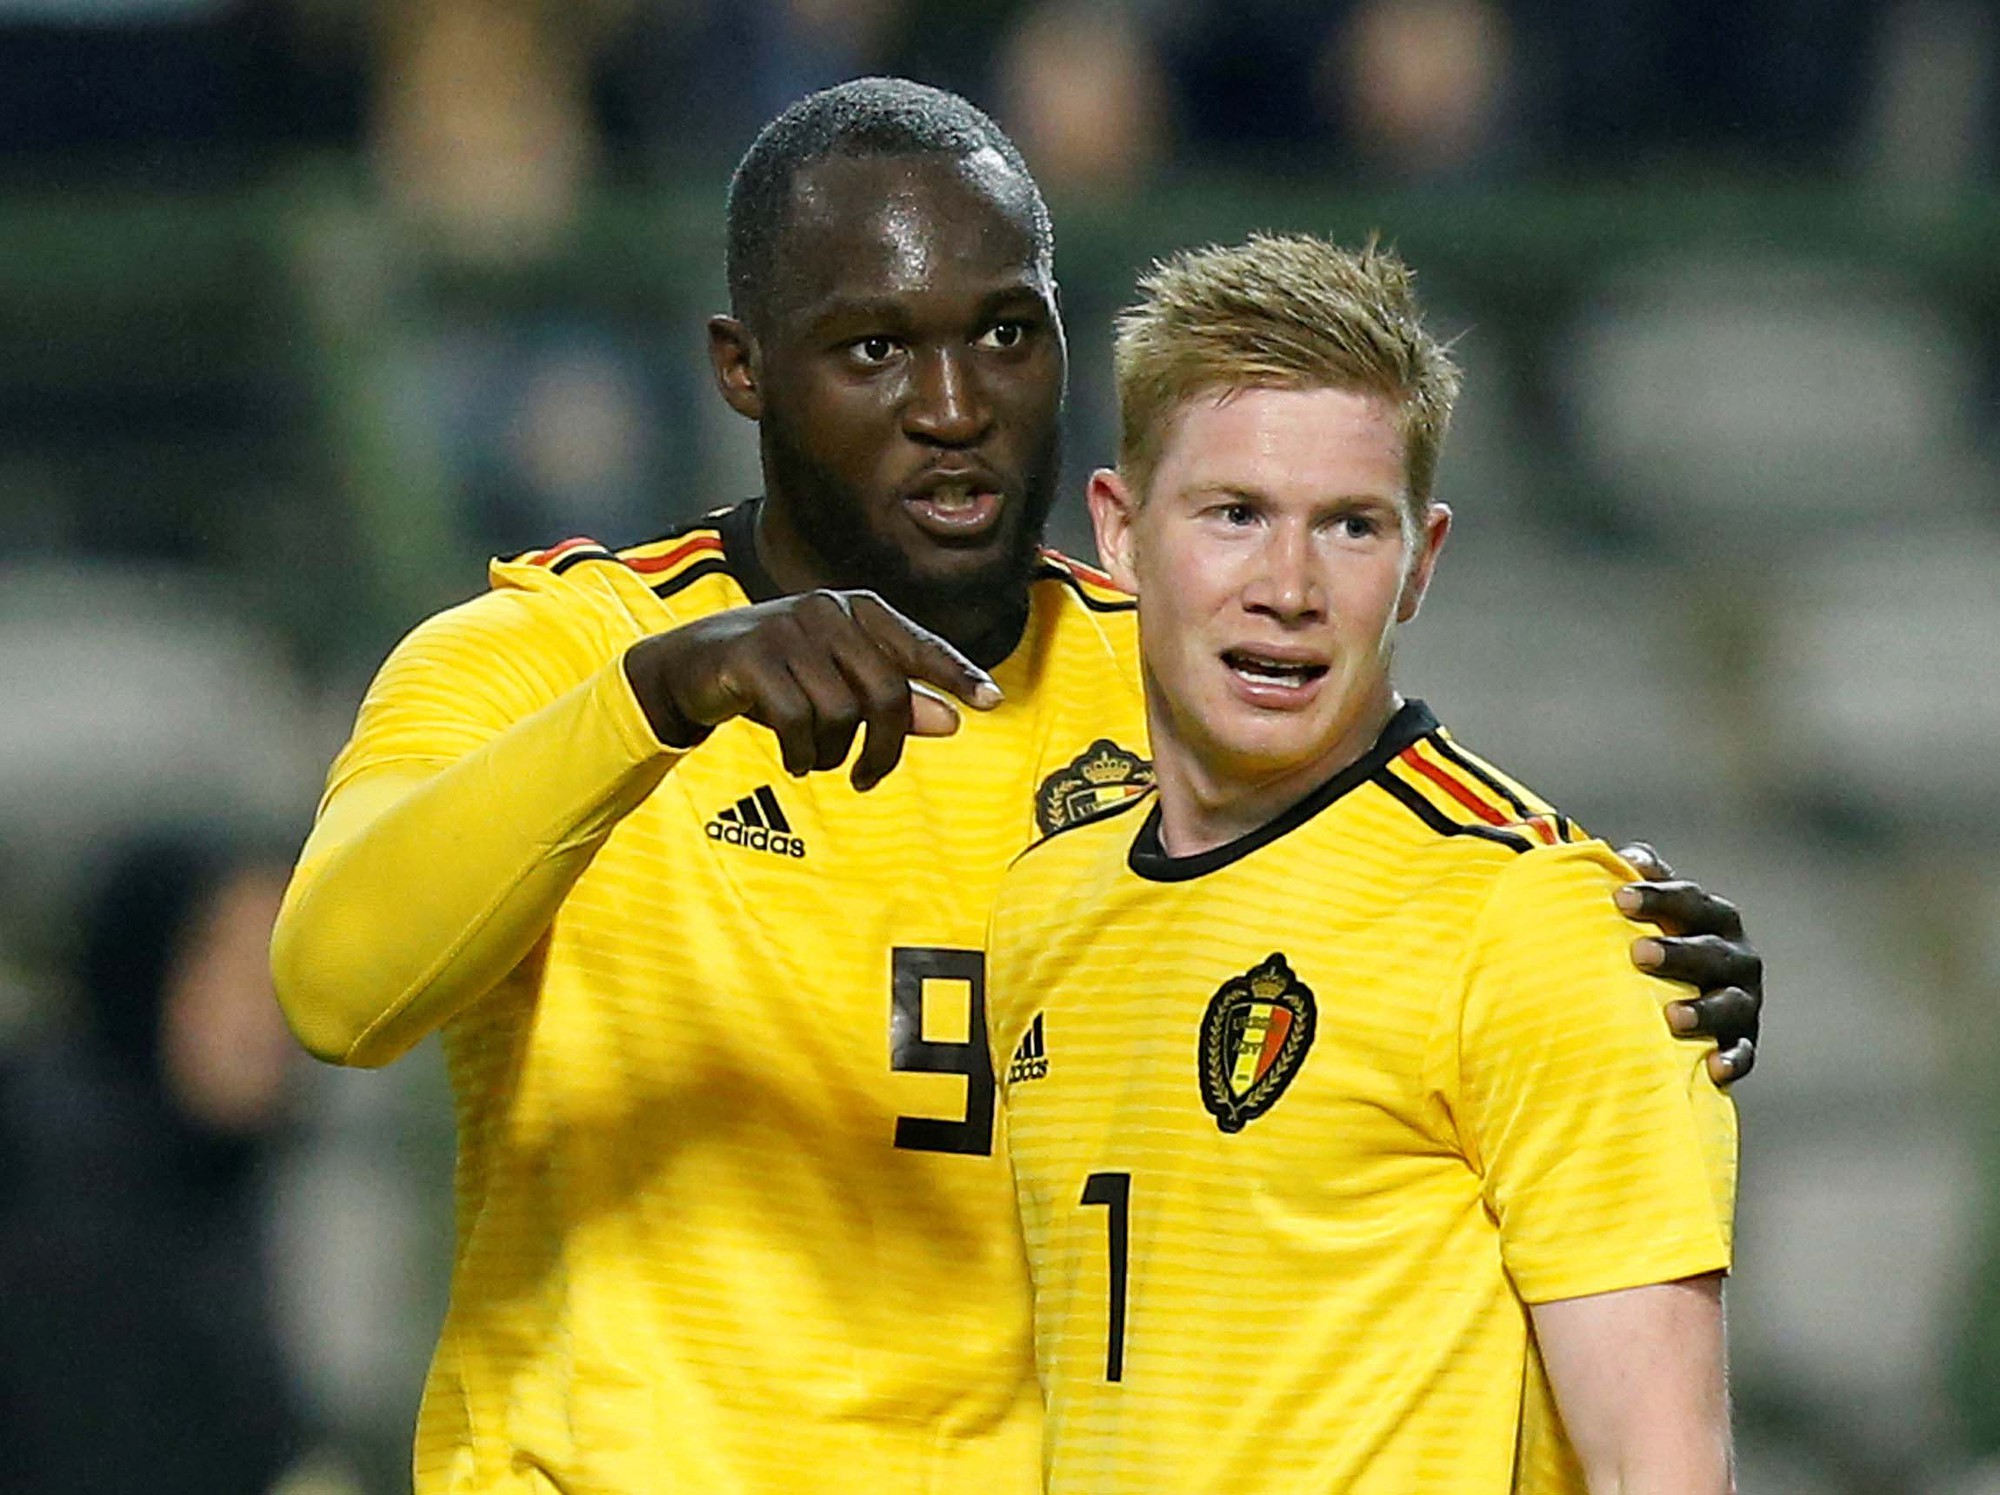 Tam giác quỷ giúp ĐT Bỉ nối dài thành tích bất bại ở vòng bảng World Cup - Ảnh 5.